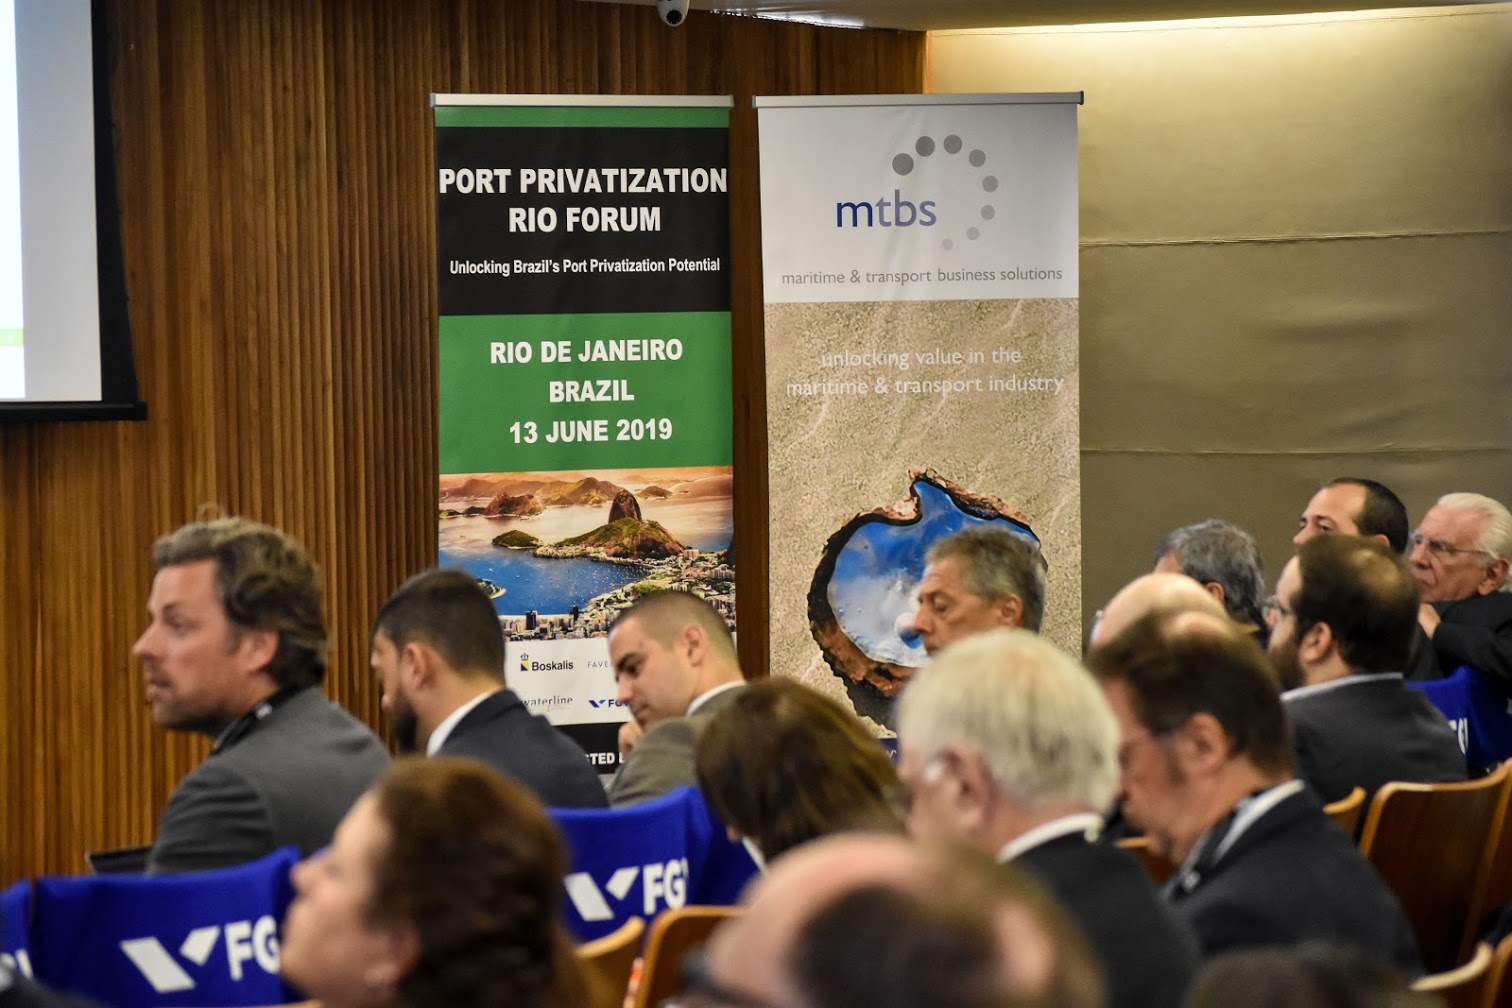 PFI Port Privatization Forum 2019 Rio